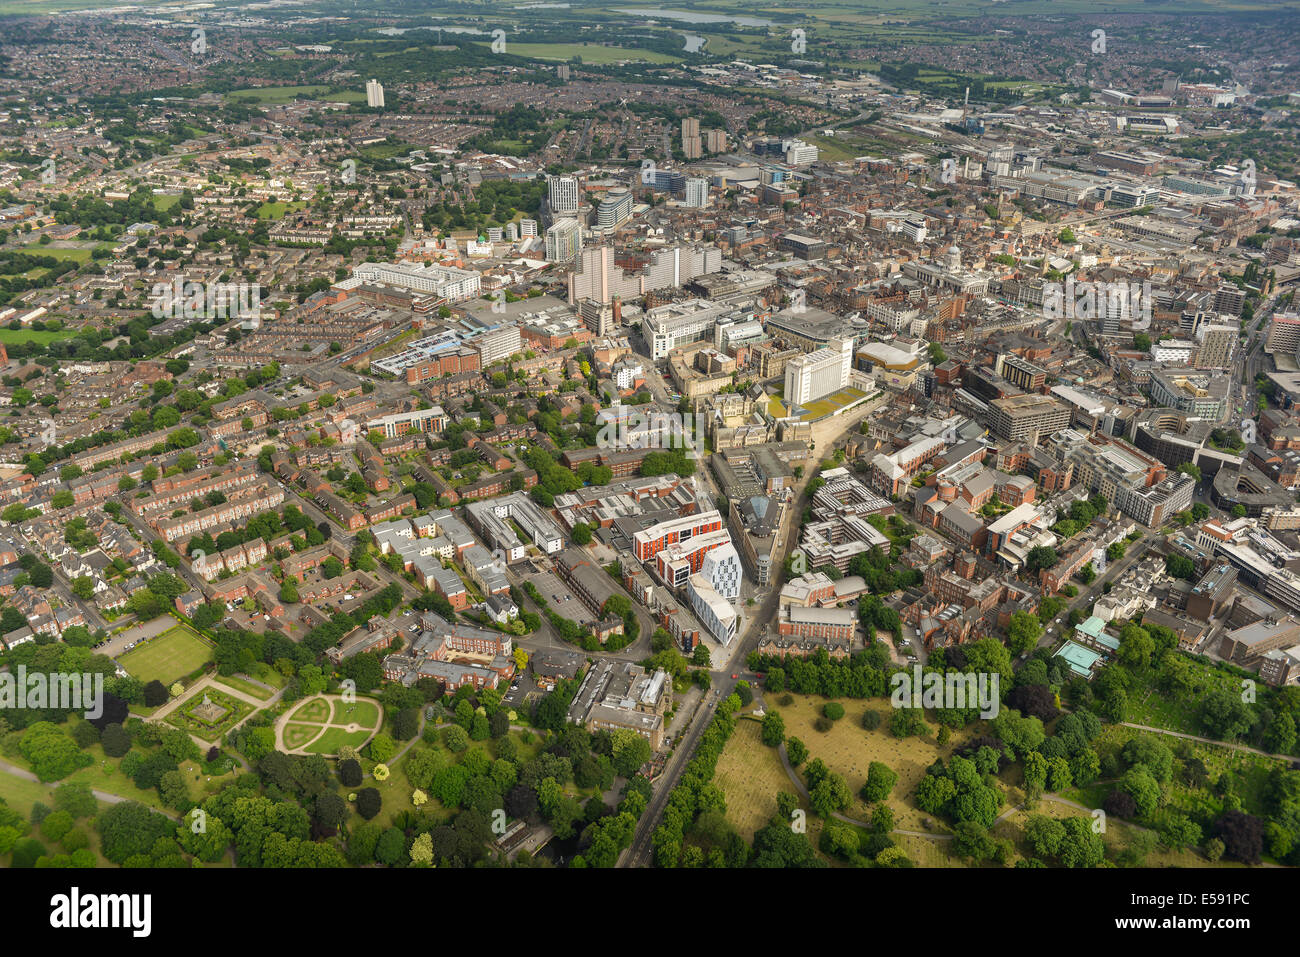 Une vue aérienne montrant aux environs de l'Université de Nottingham Trent dans le centre-ville de Nottingham. Banque D'Images